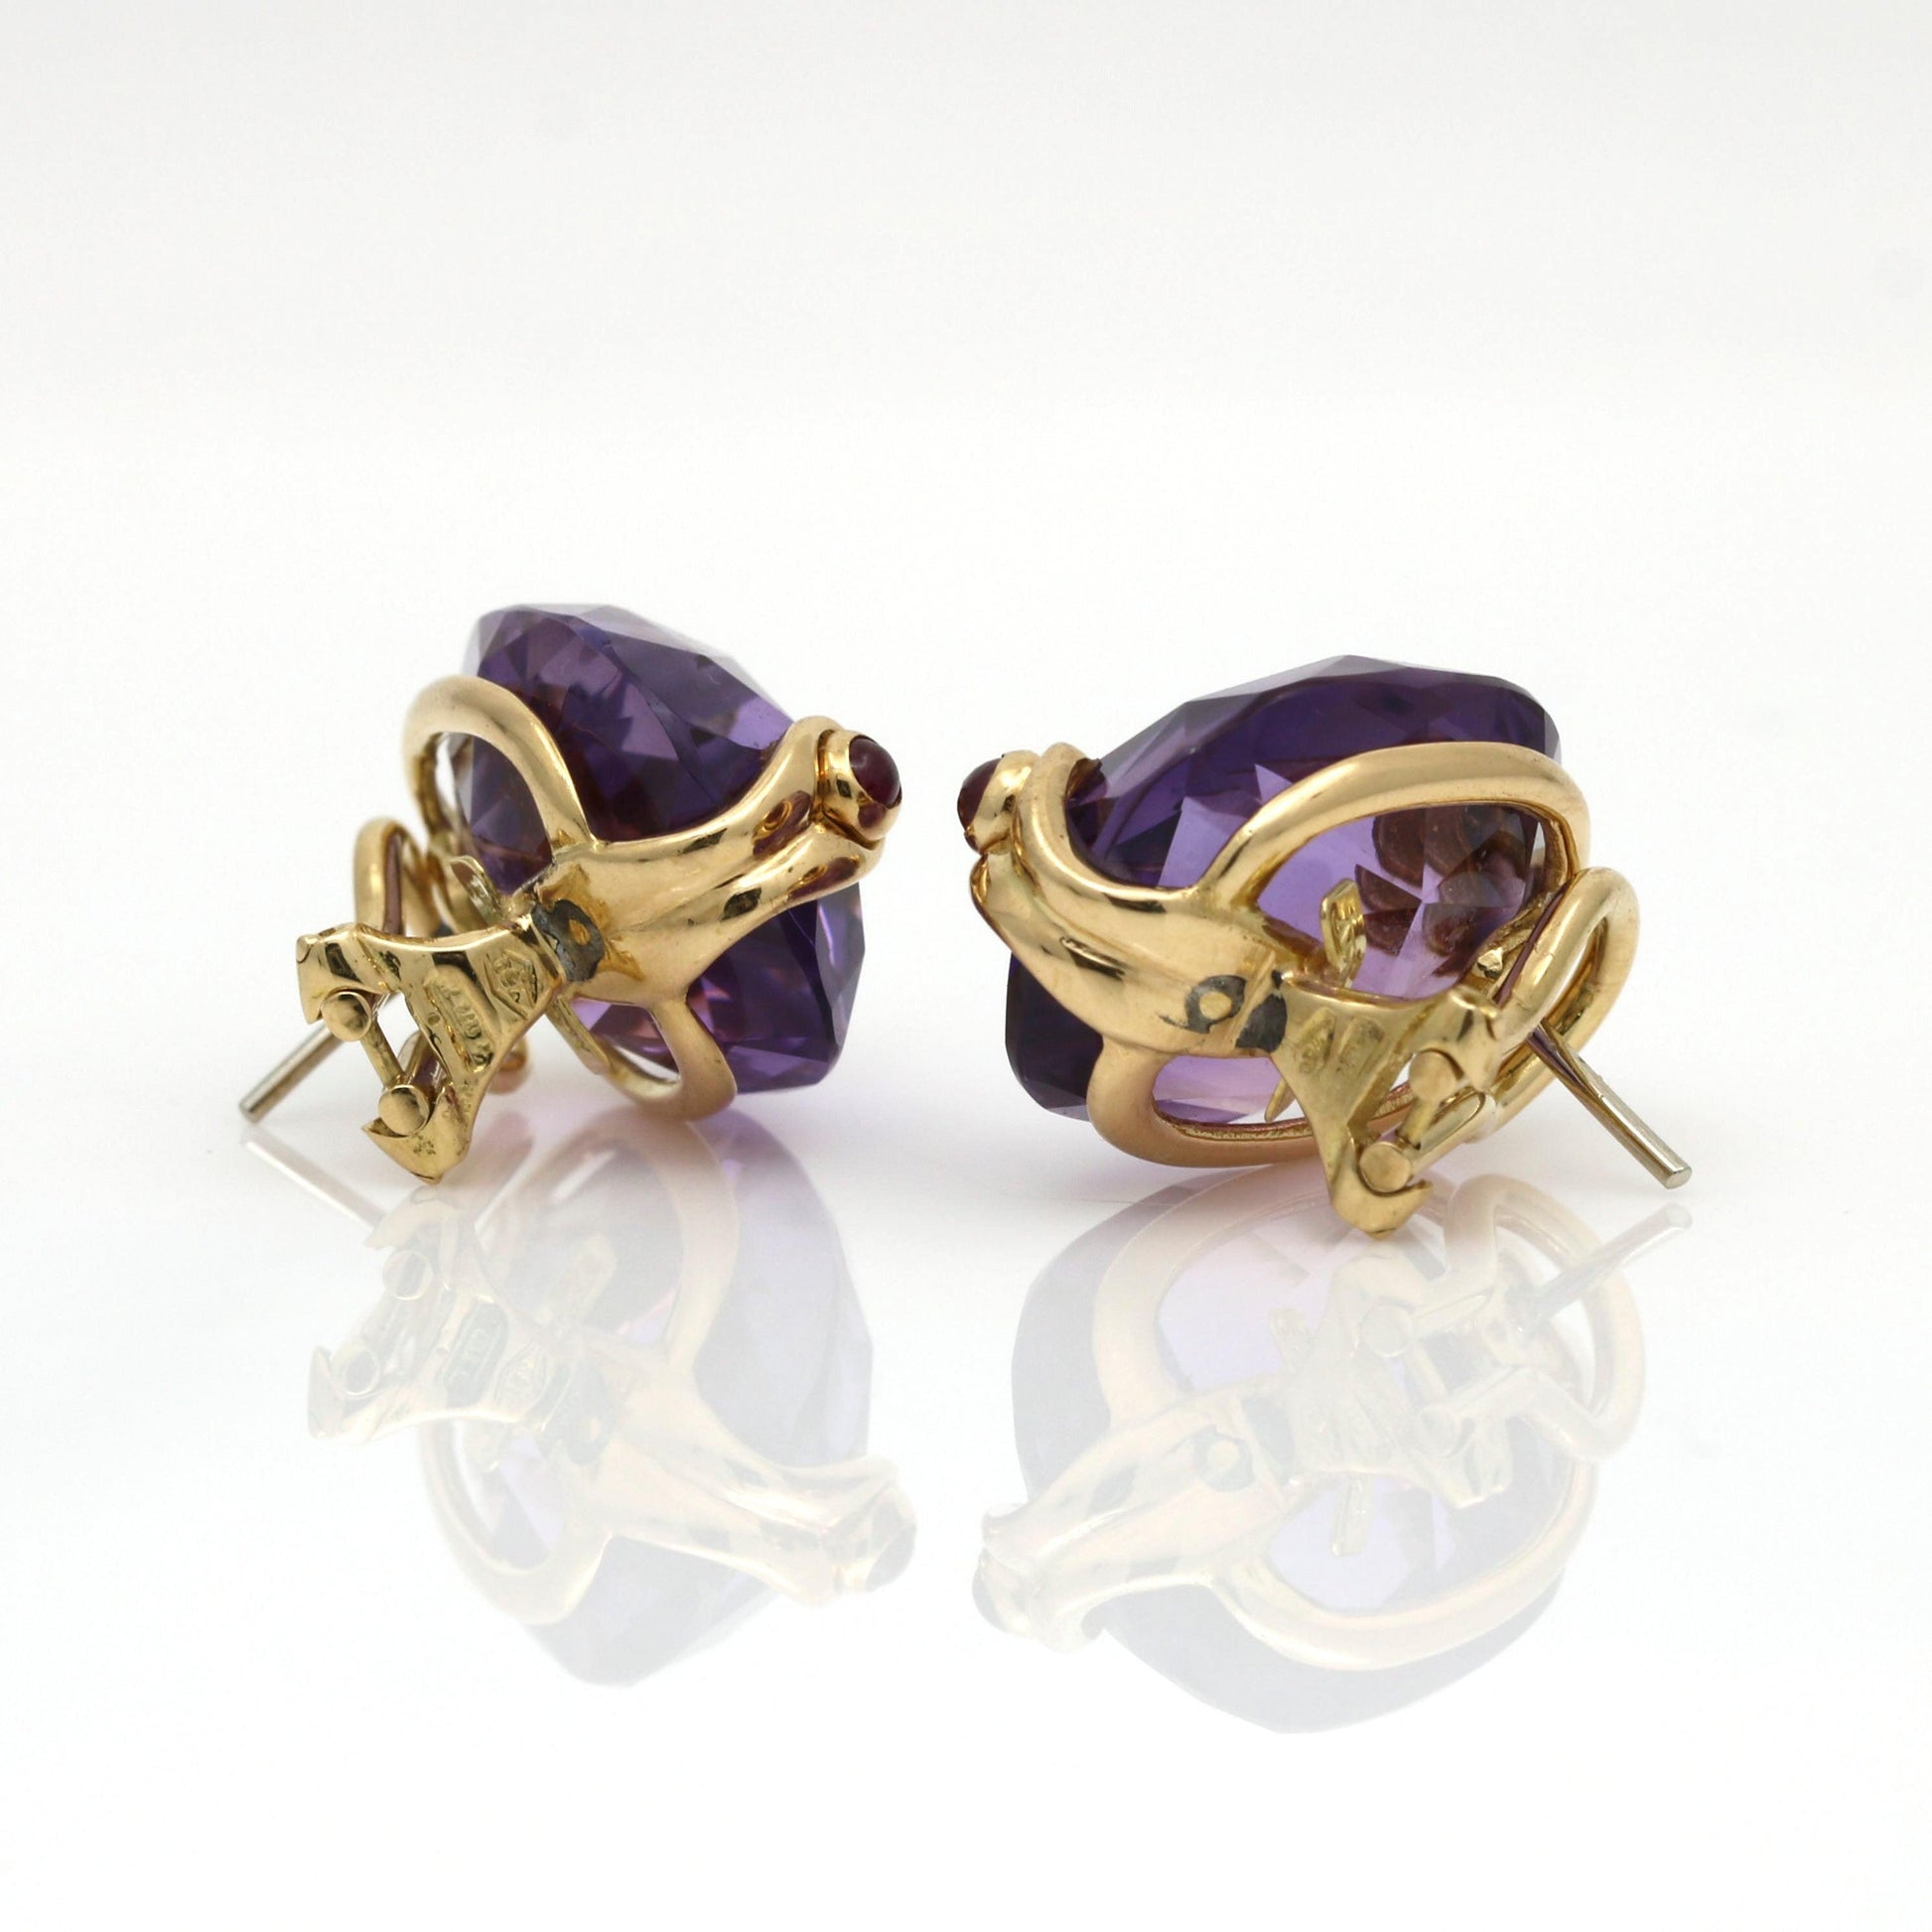 Women's Antonini Amethyst Ruby Earrings in 18k Yellow Gold - 31 Jewels Inc.